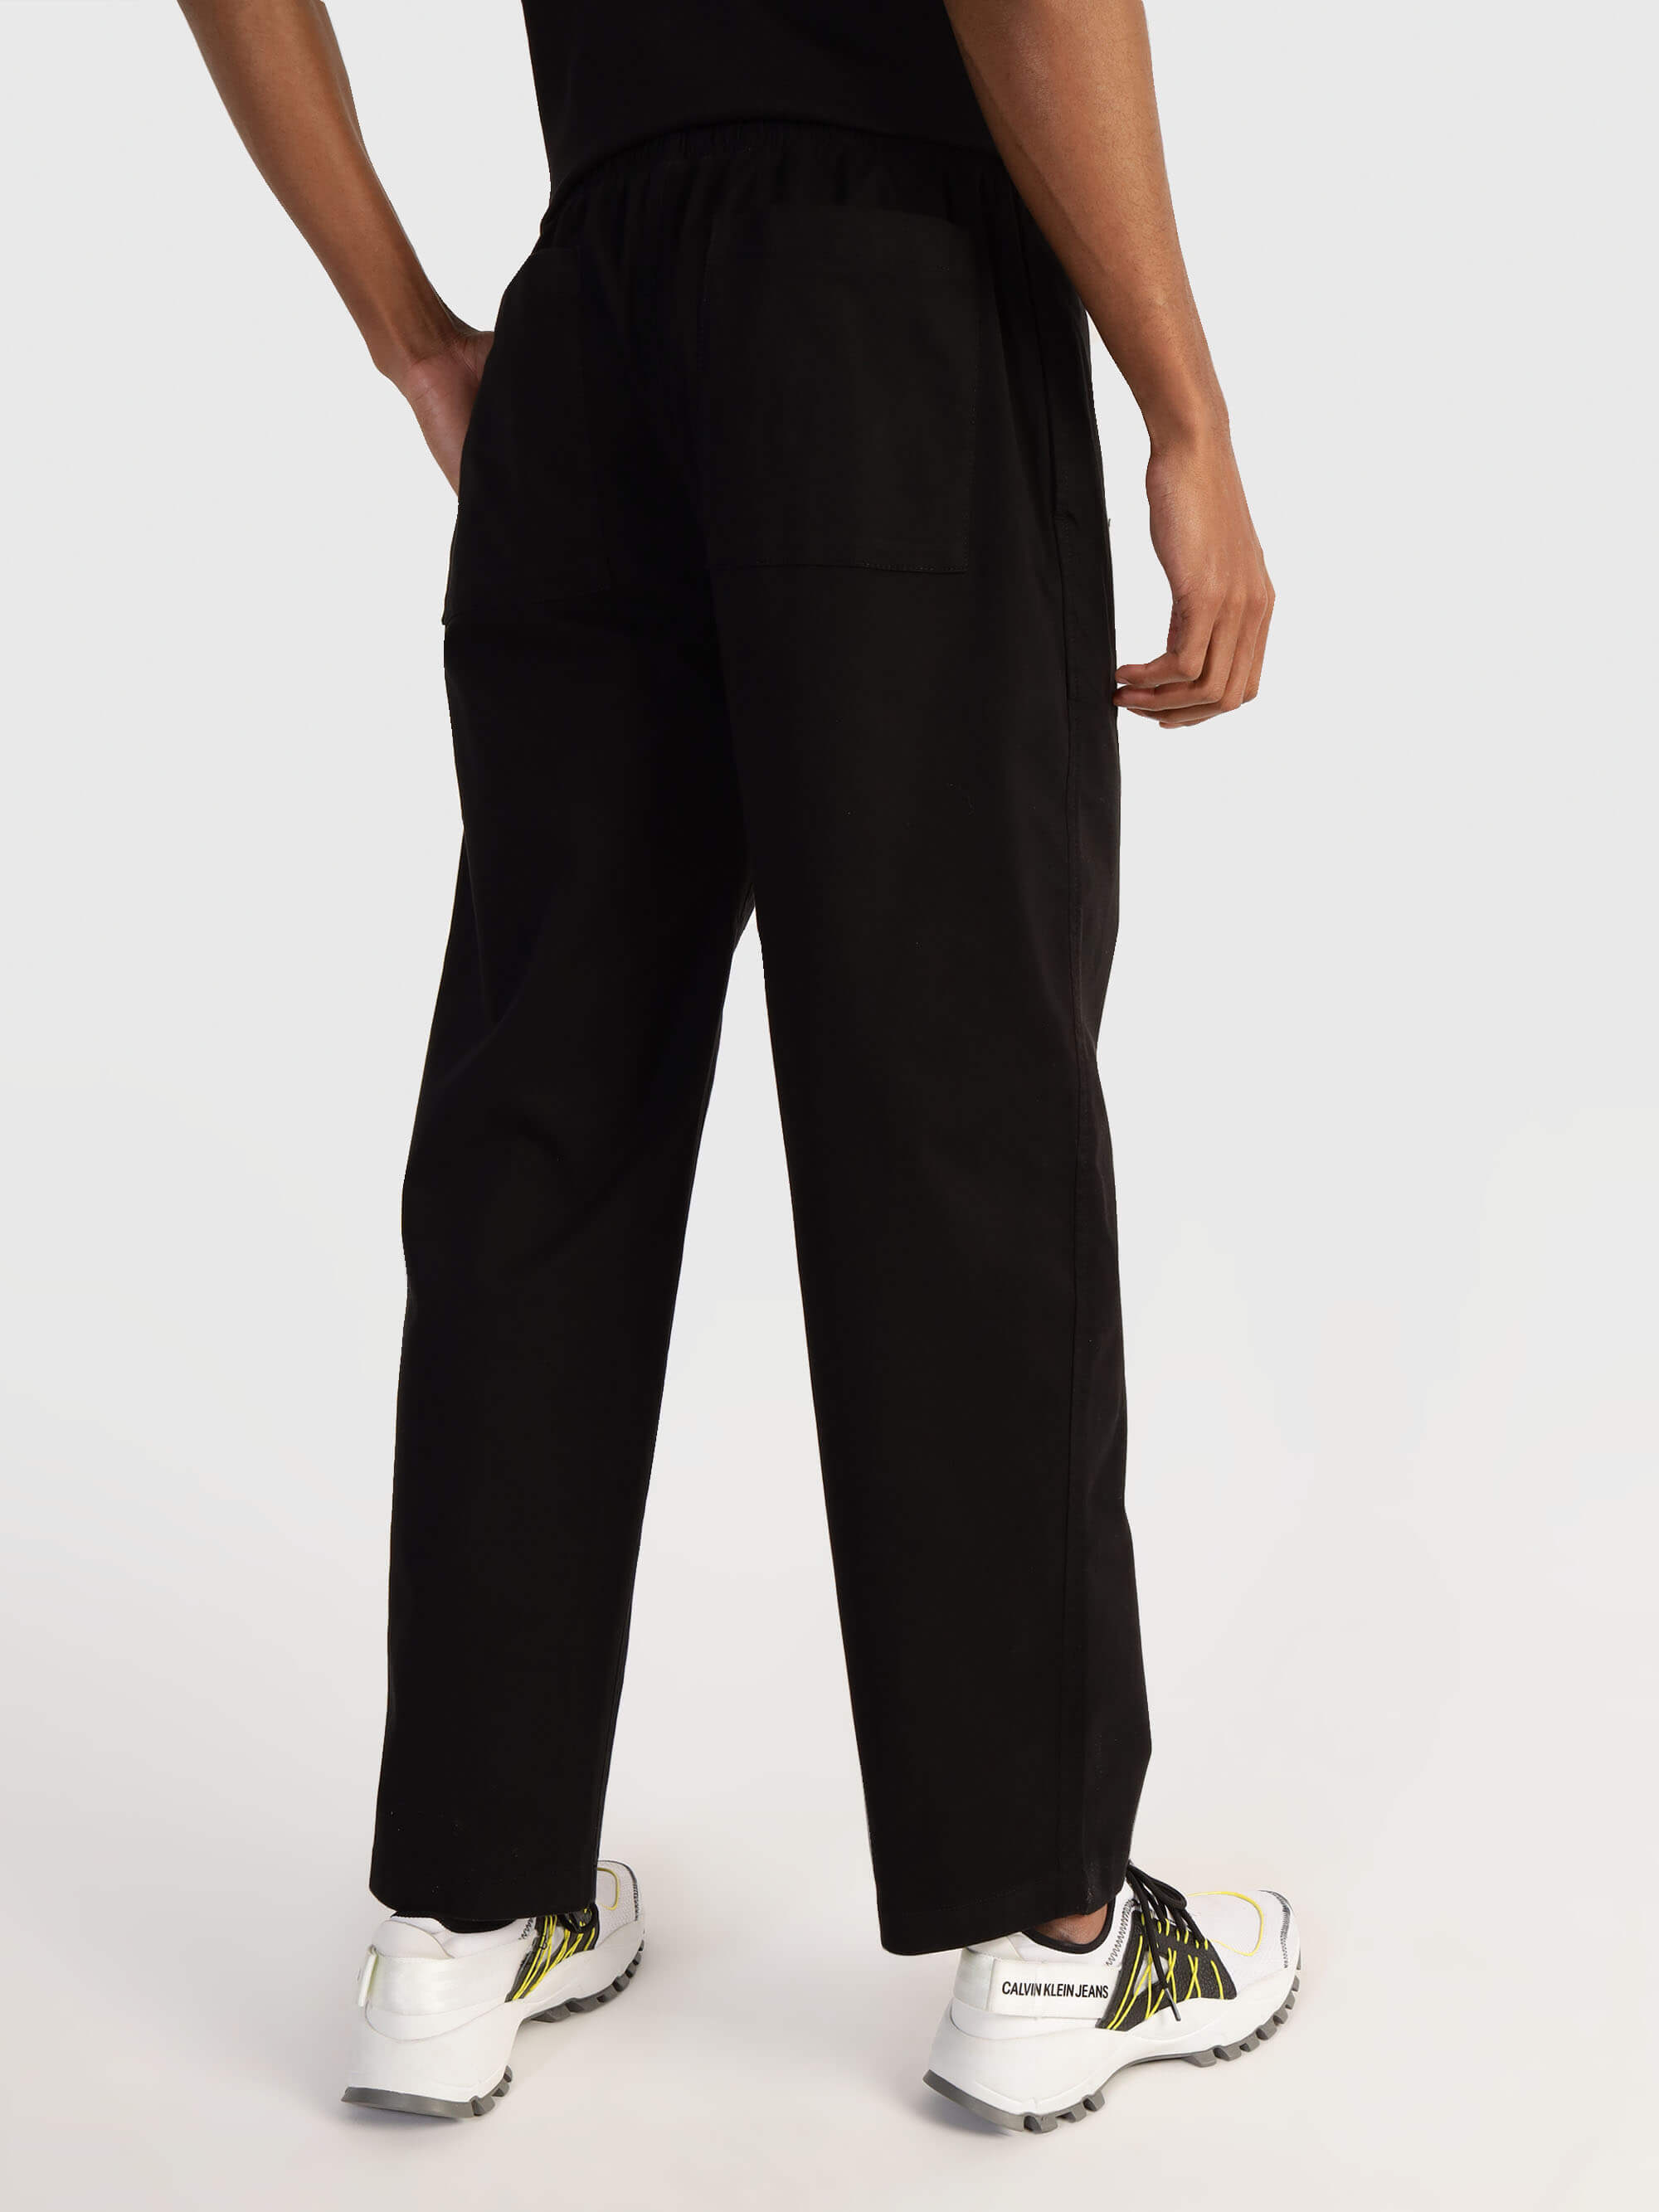 Pantalón Calvin Klein con Monograma Hombre Negro